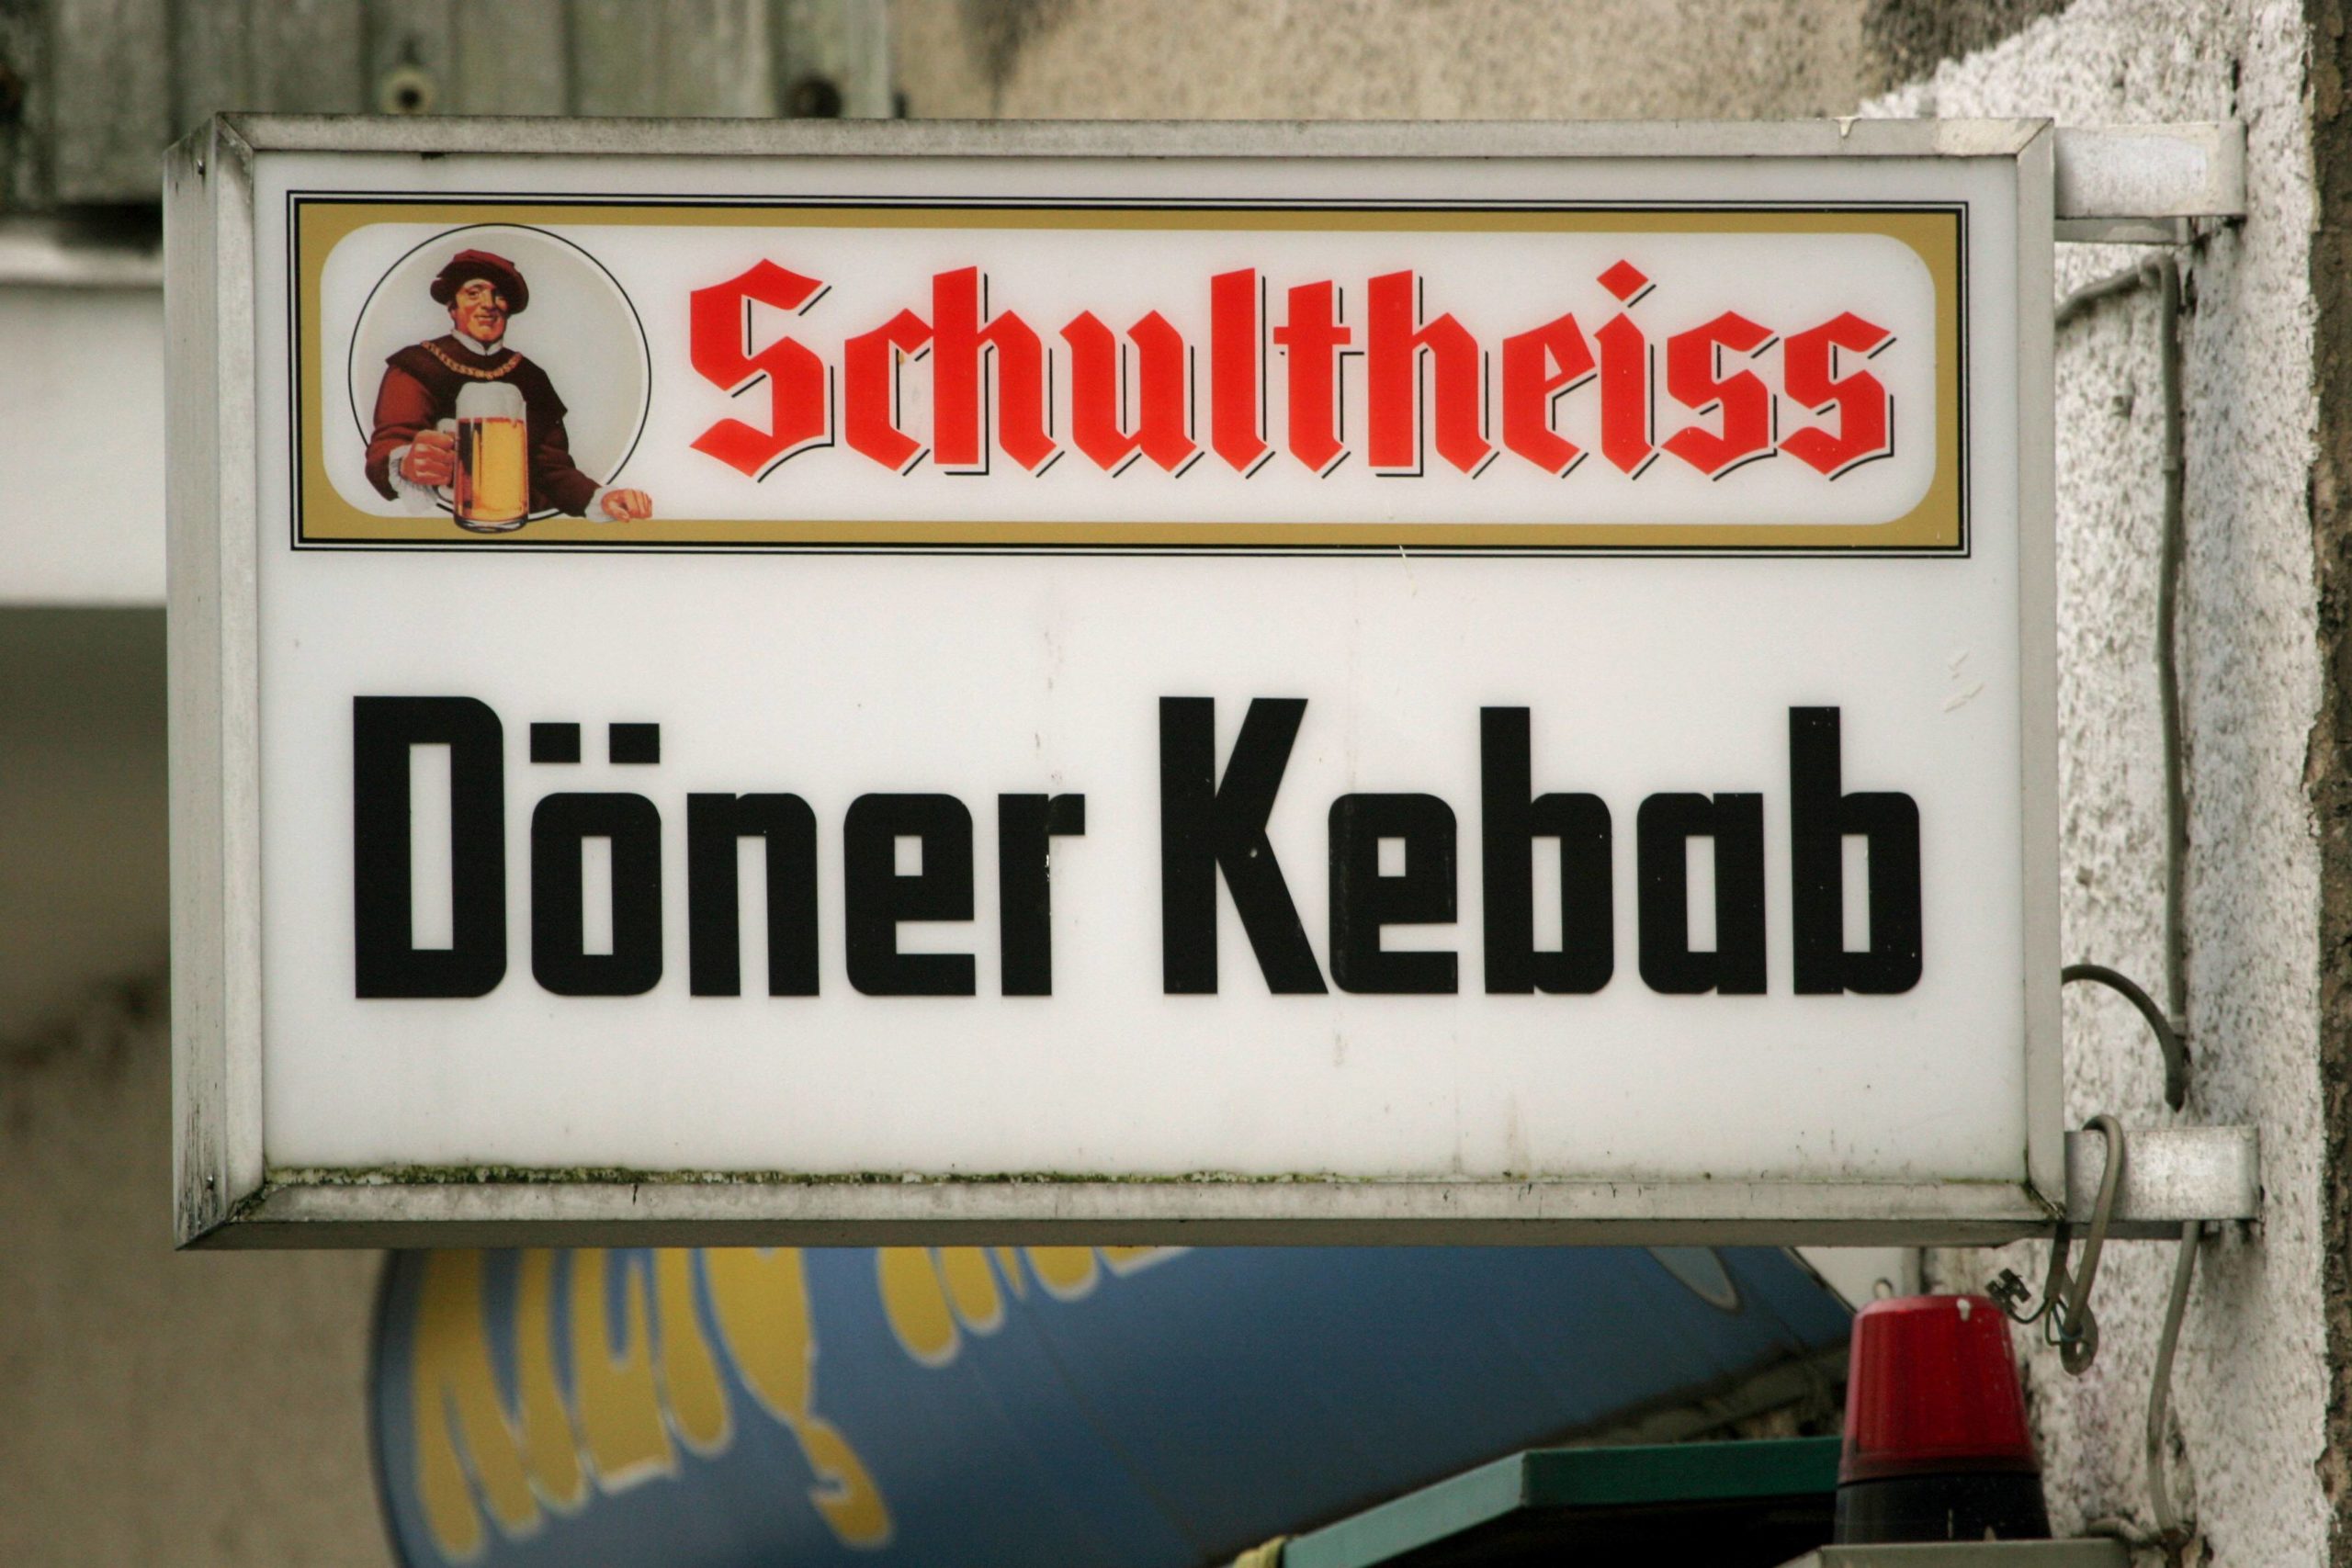 Döner Berlin Geschichte: Döner-Kebab-Schild mit Schultheiss-Werbung. Foto: Imago/Müller-Stauffenberg